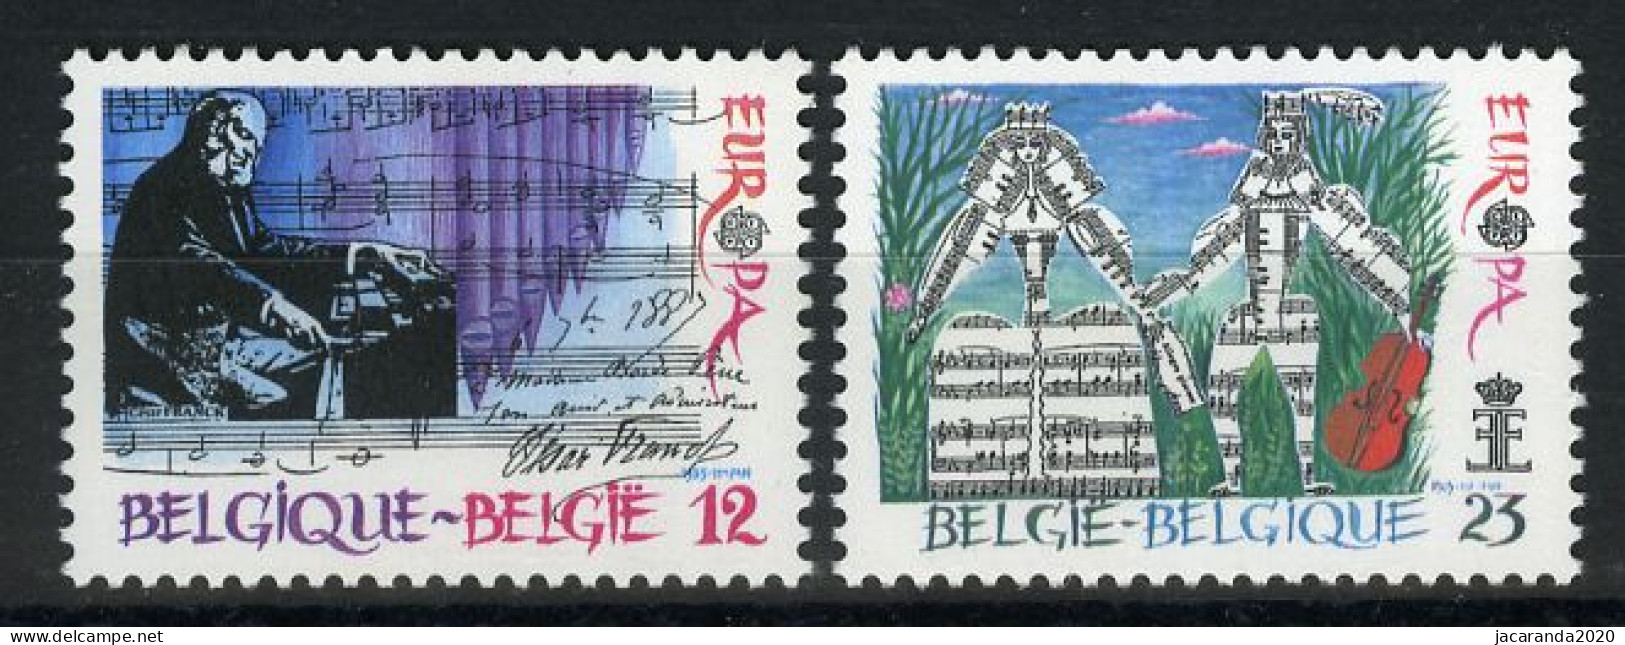 België 2175/76 - Europa 1985 - Europees Jaar Van De Muziek - César Franck - Concours Musical Reine Elisabeth - Ongebruikt